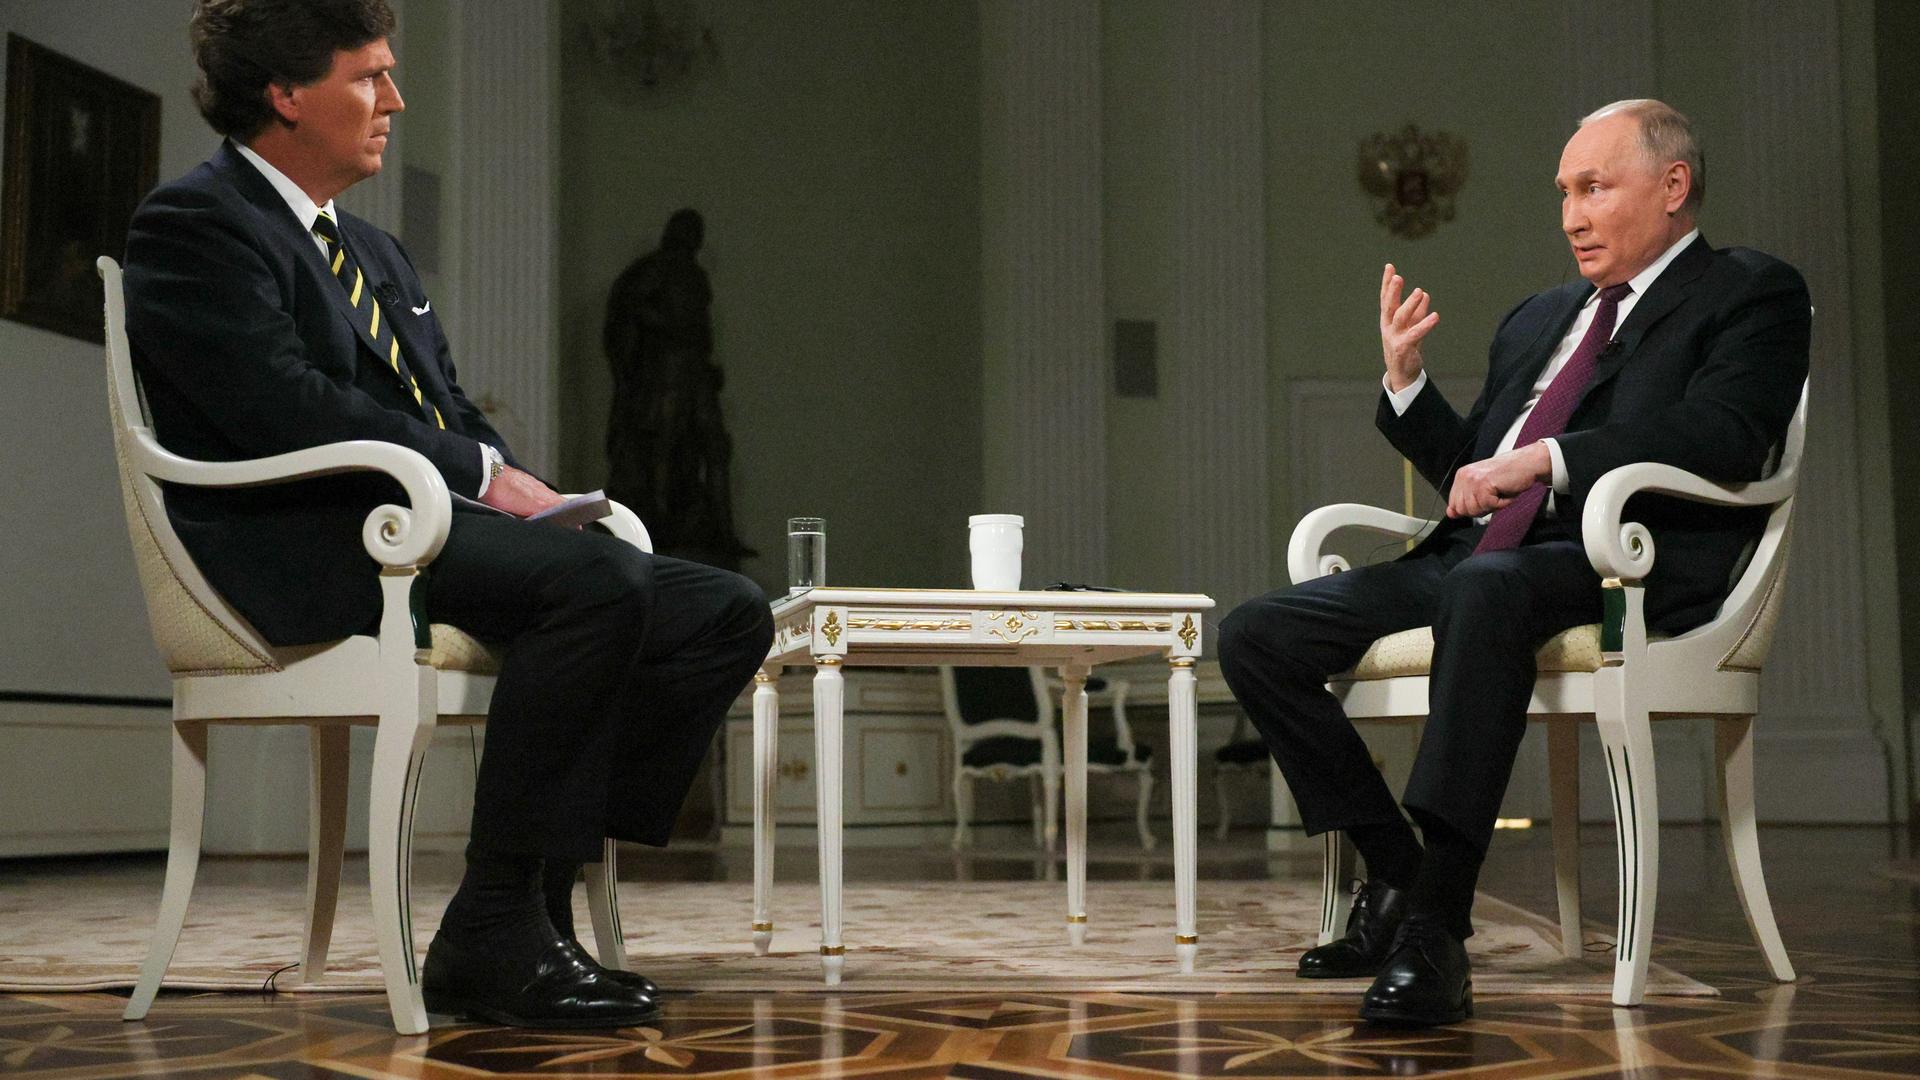 Tucker und Putin sitzen sich während des Interviews gegenüber